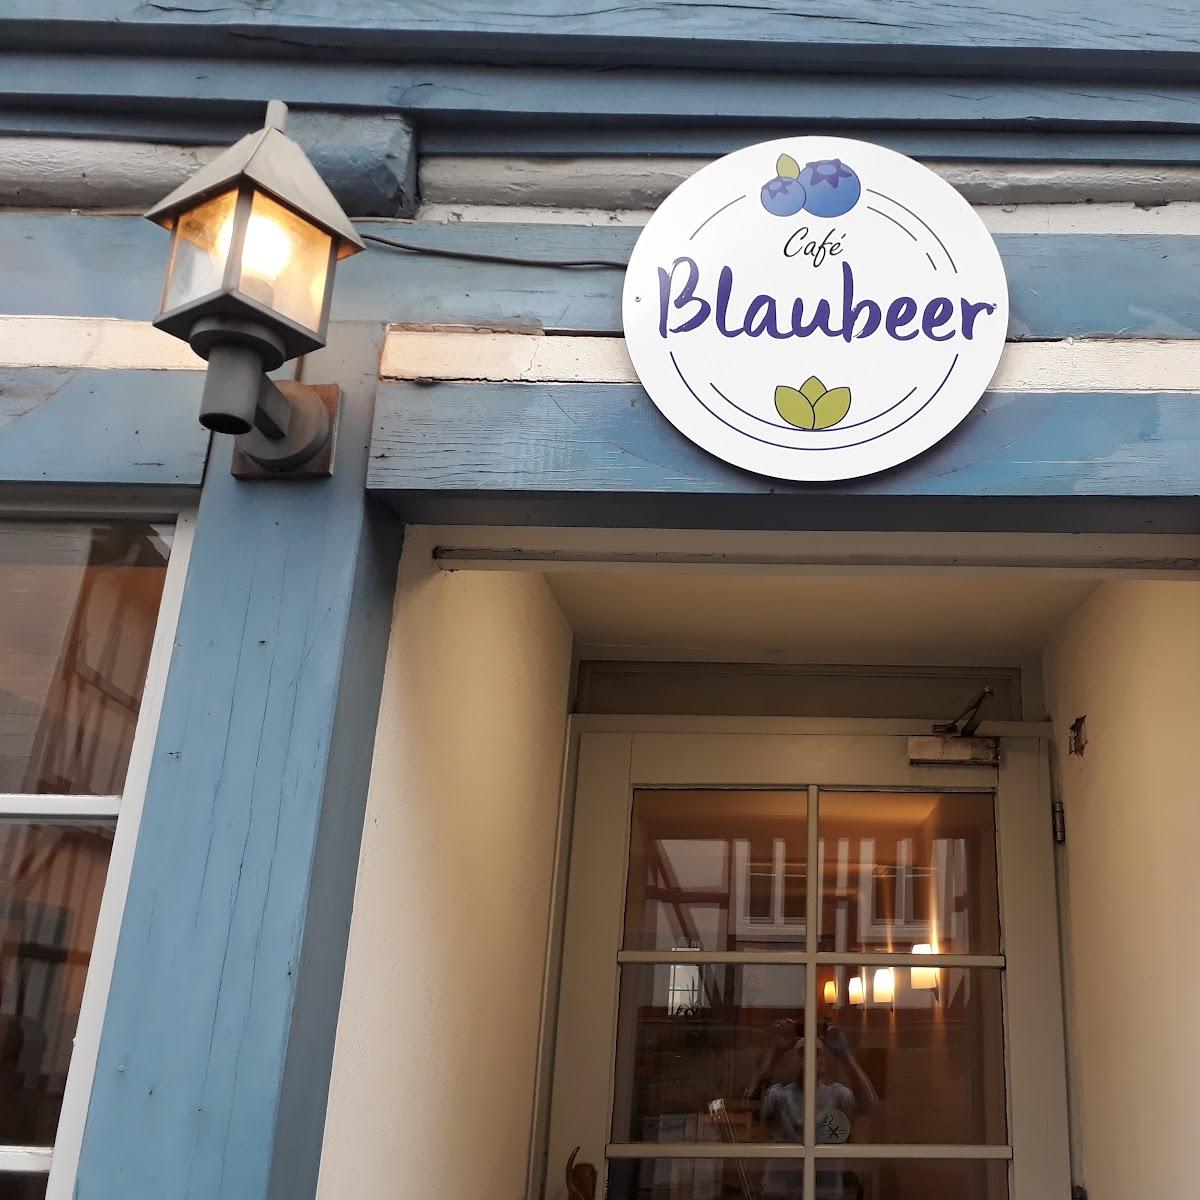 Restaurant "Cafe Blaubeer" in Göttingen